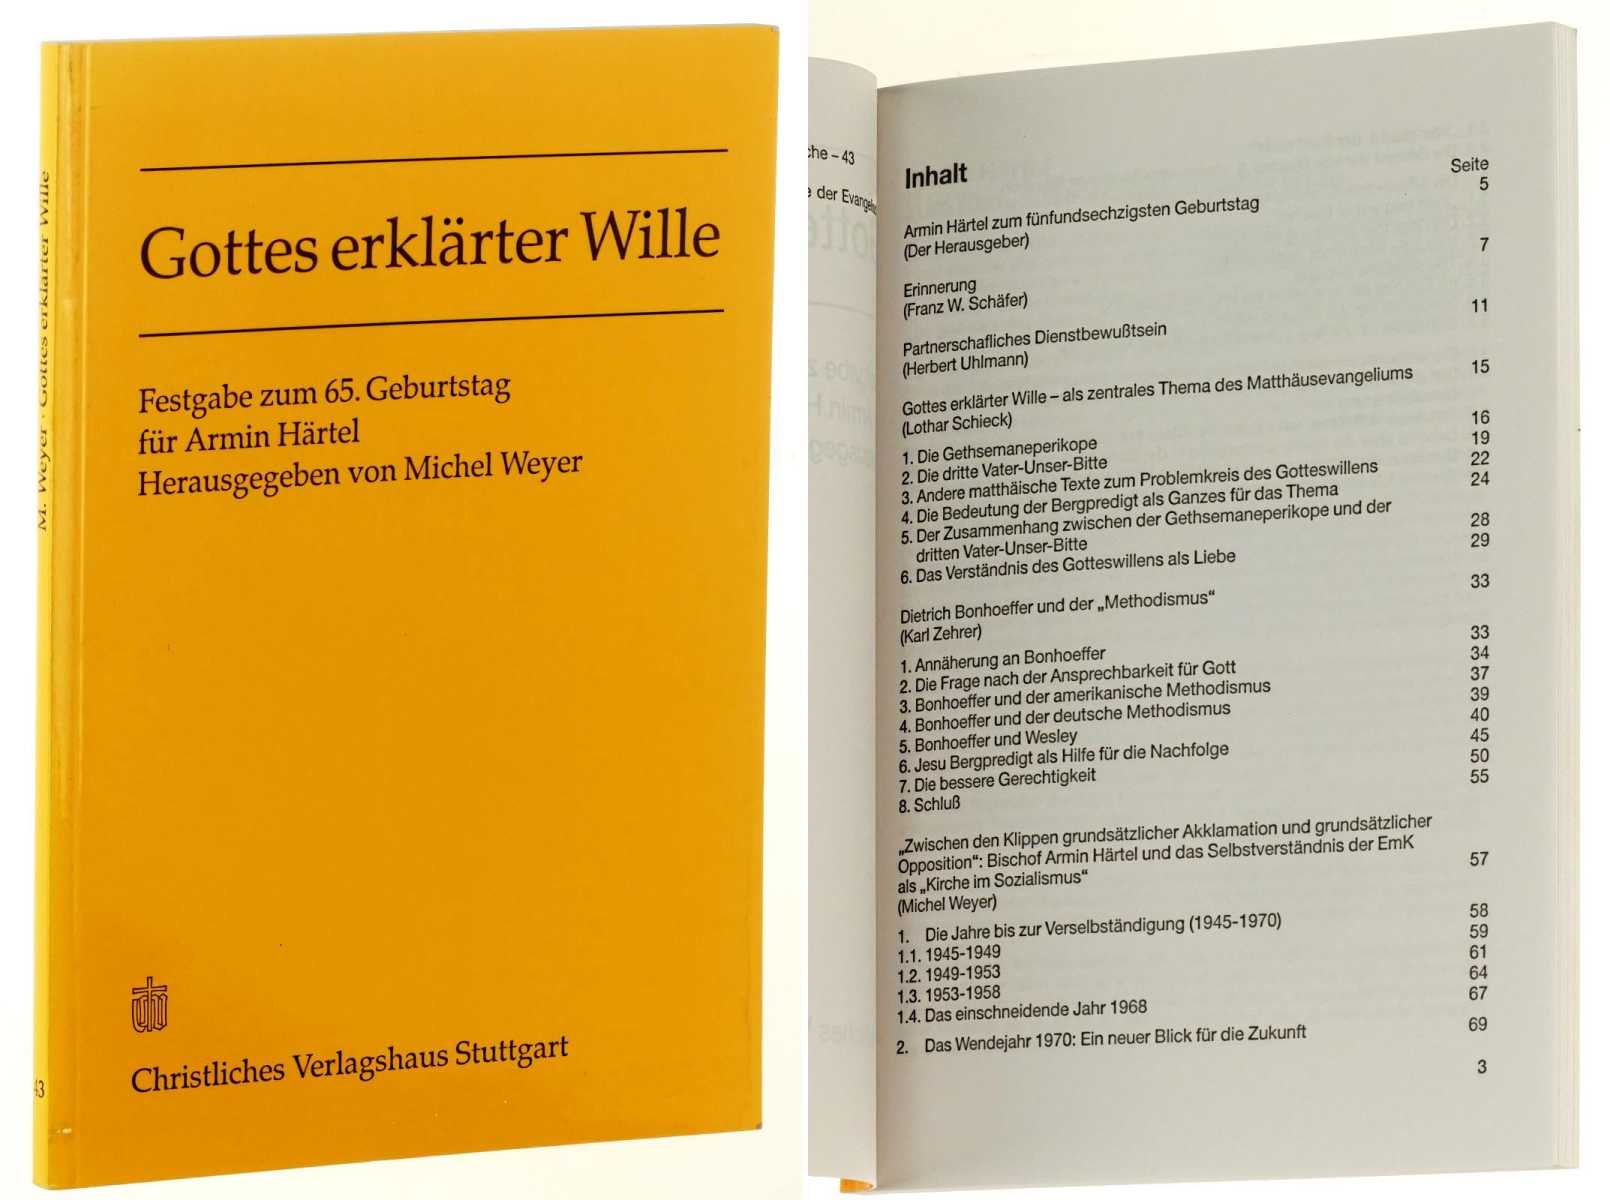 Weyer, Michael (Hg.):  Gottes erklärter Wille. Festgabe zum 65. Geburtstag für Armin Härtel. 